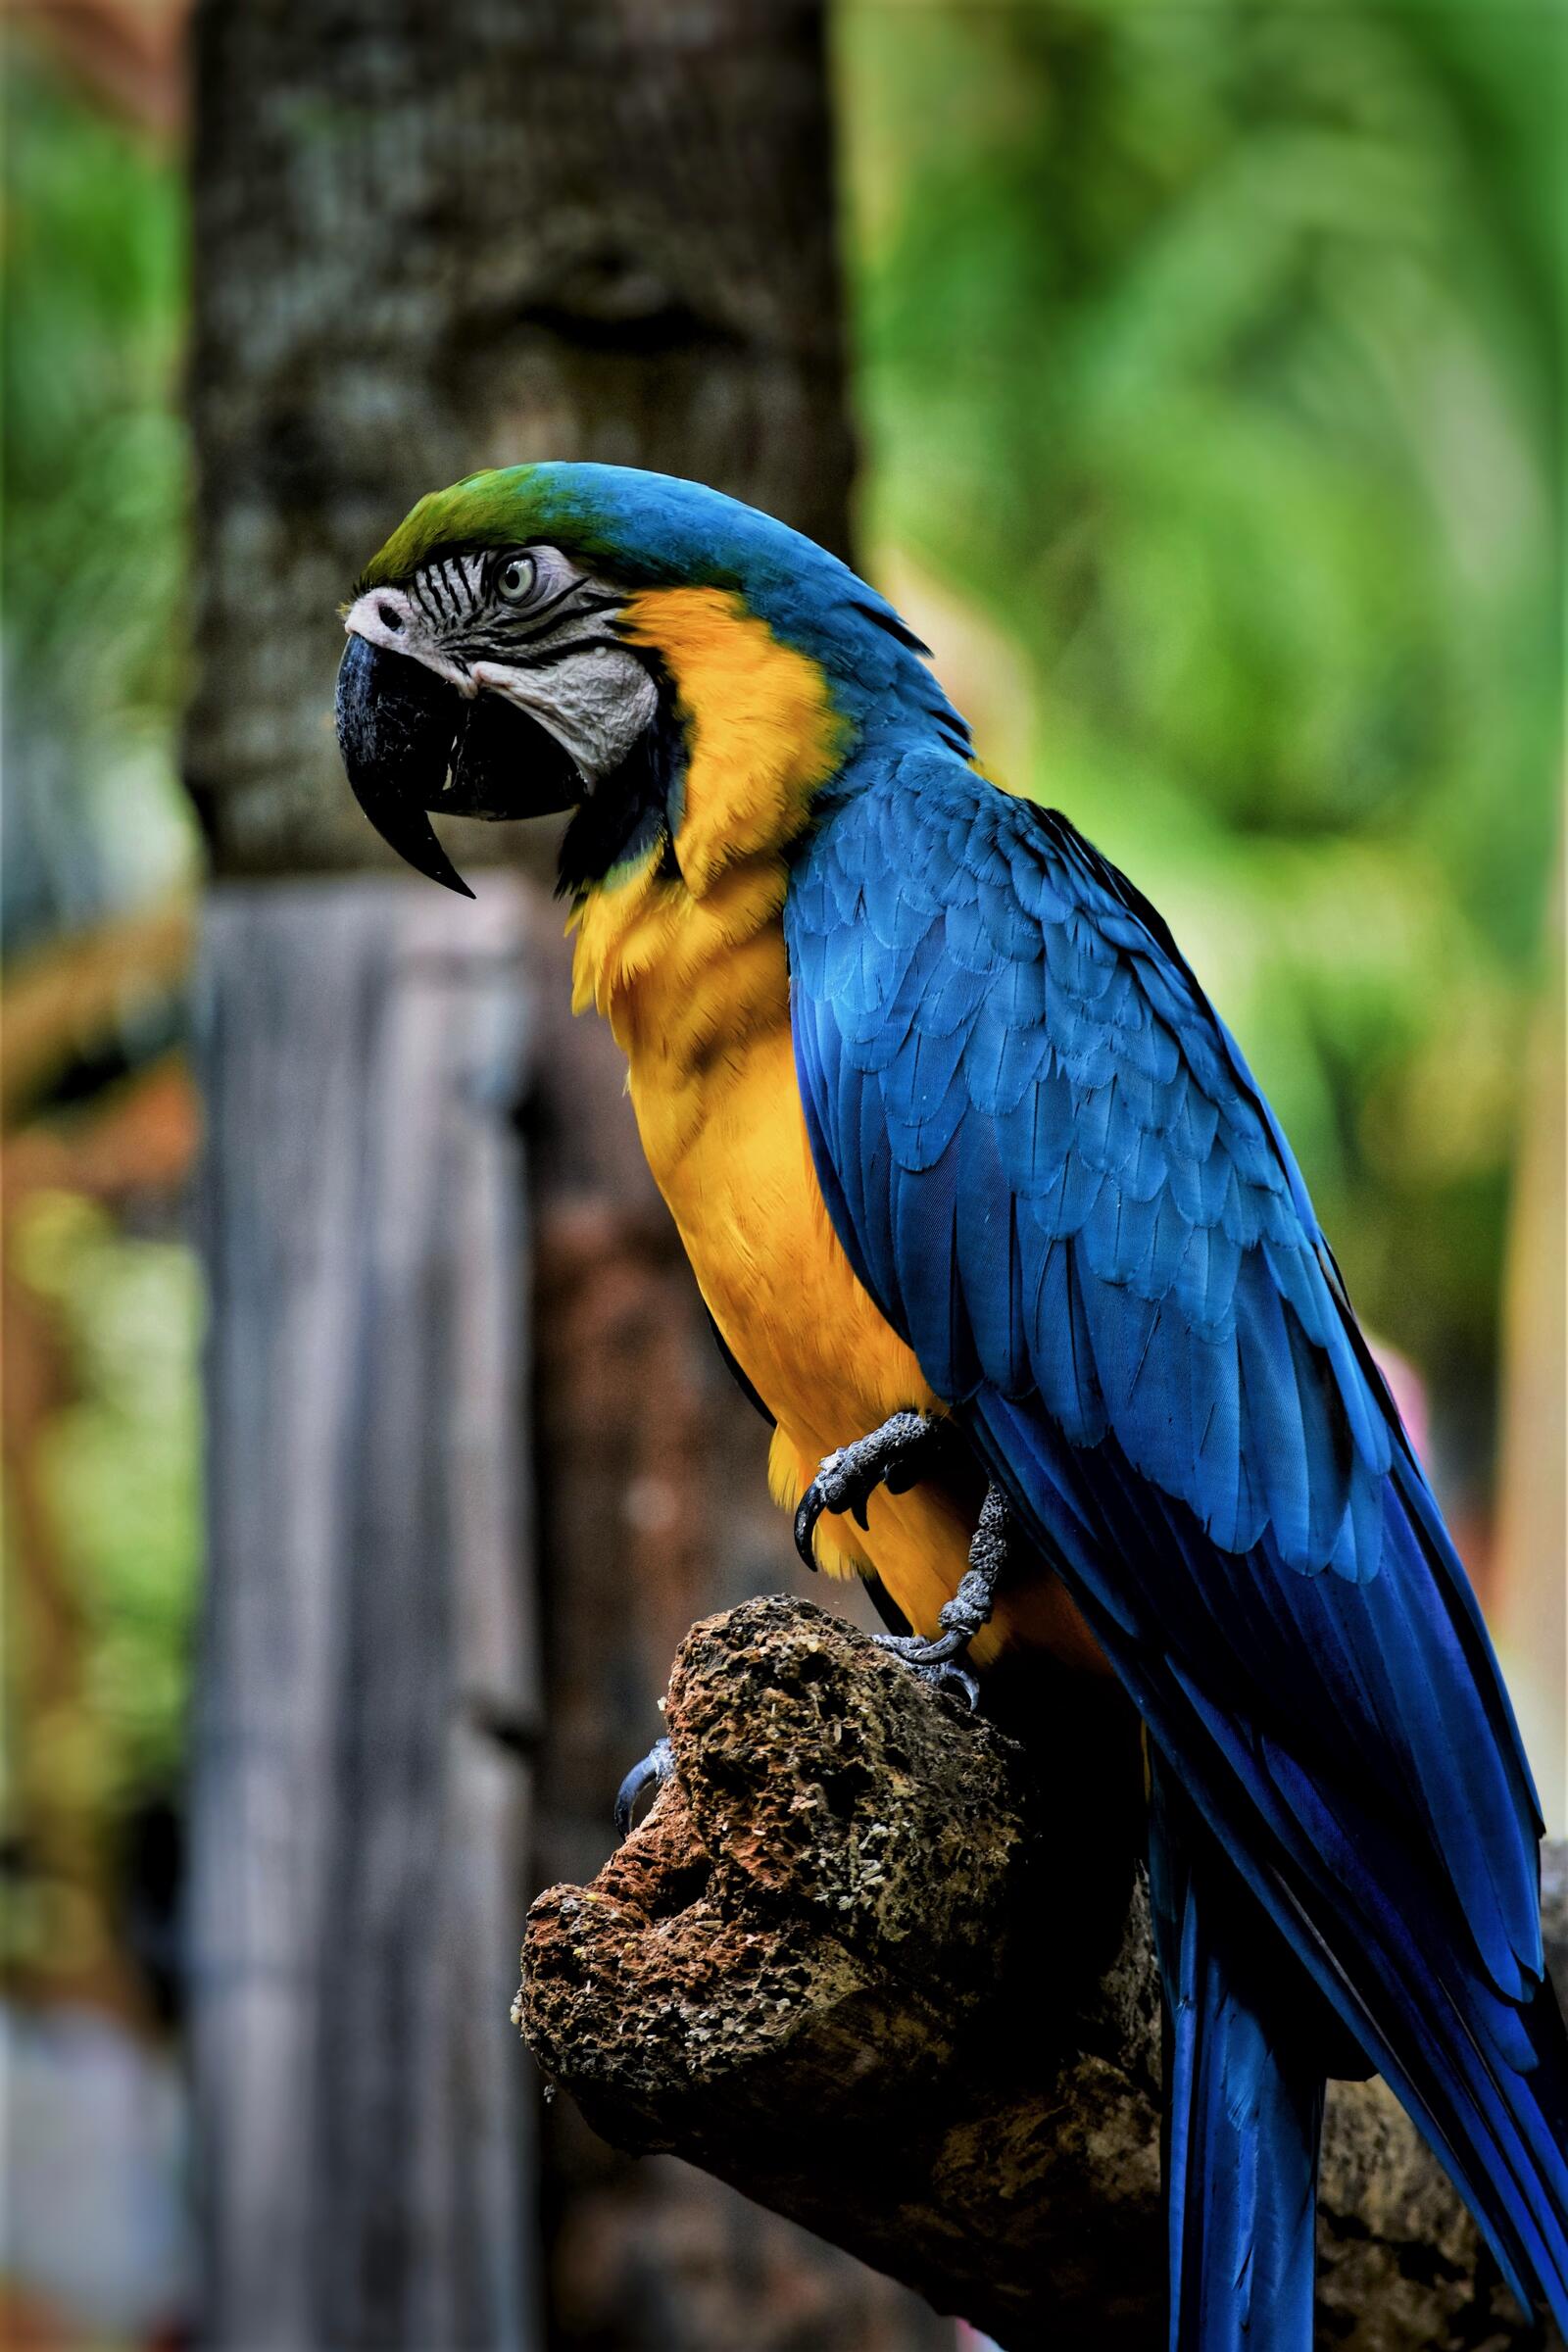 Wallpapers macaw parrot beak bird on the desktop